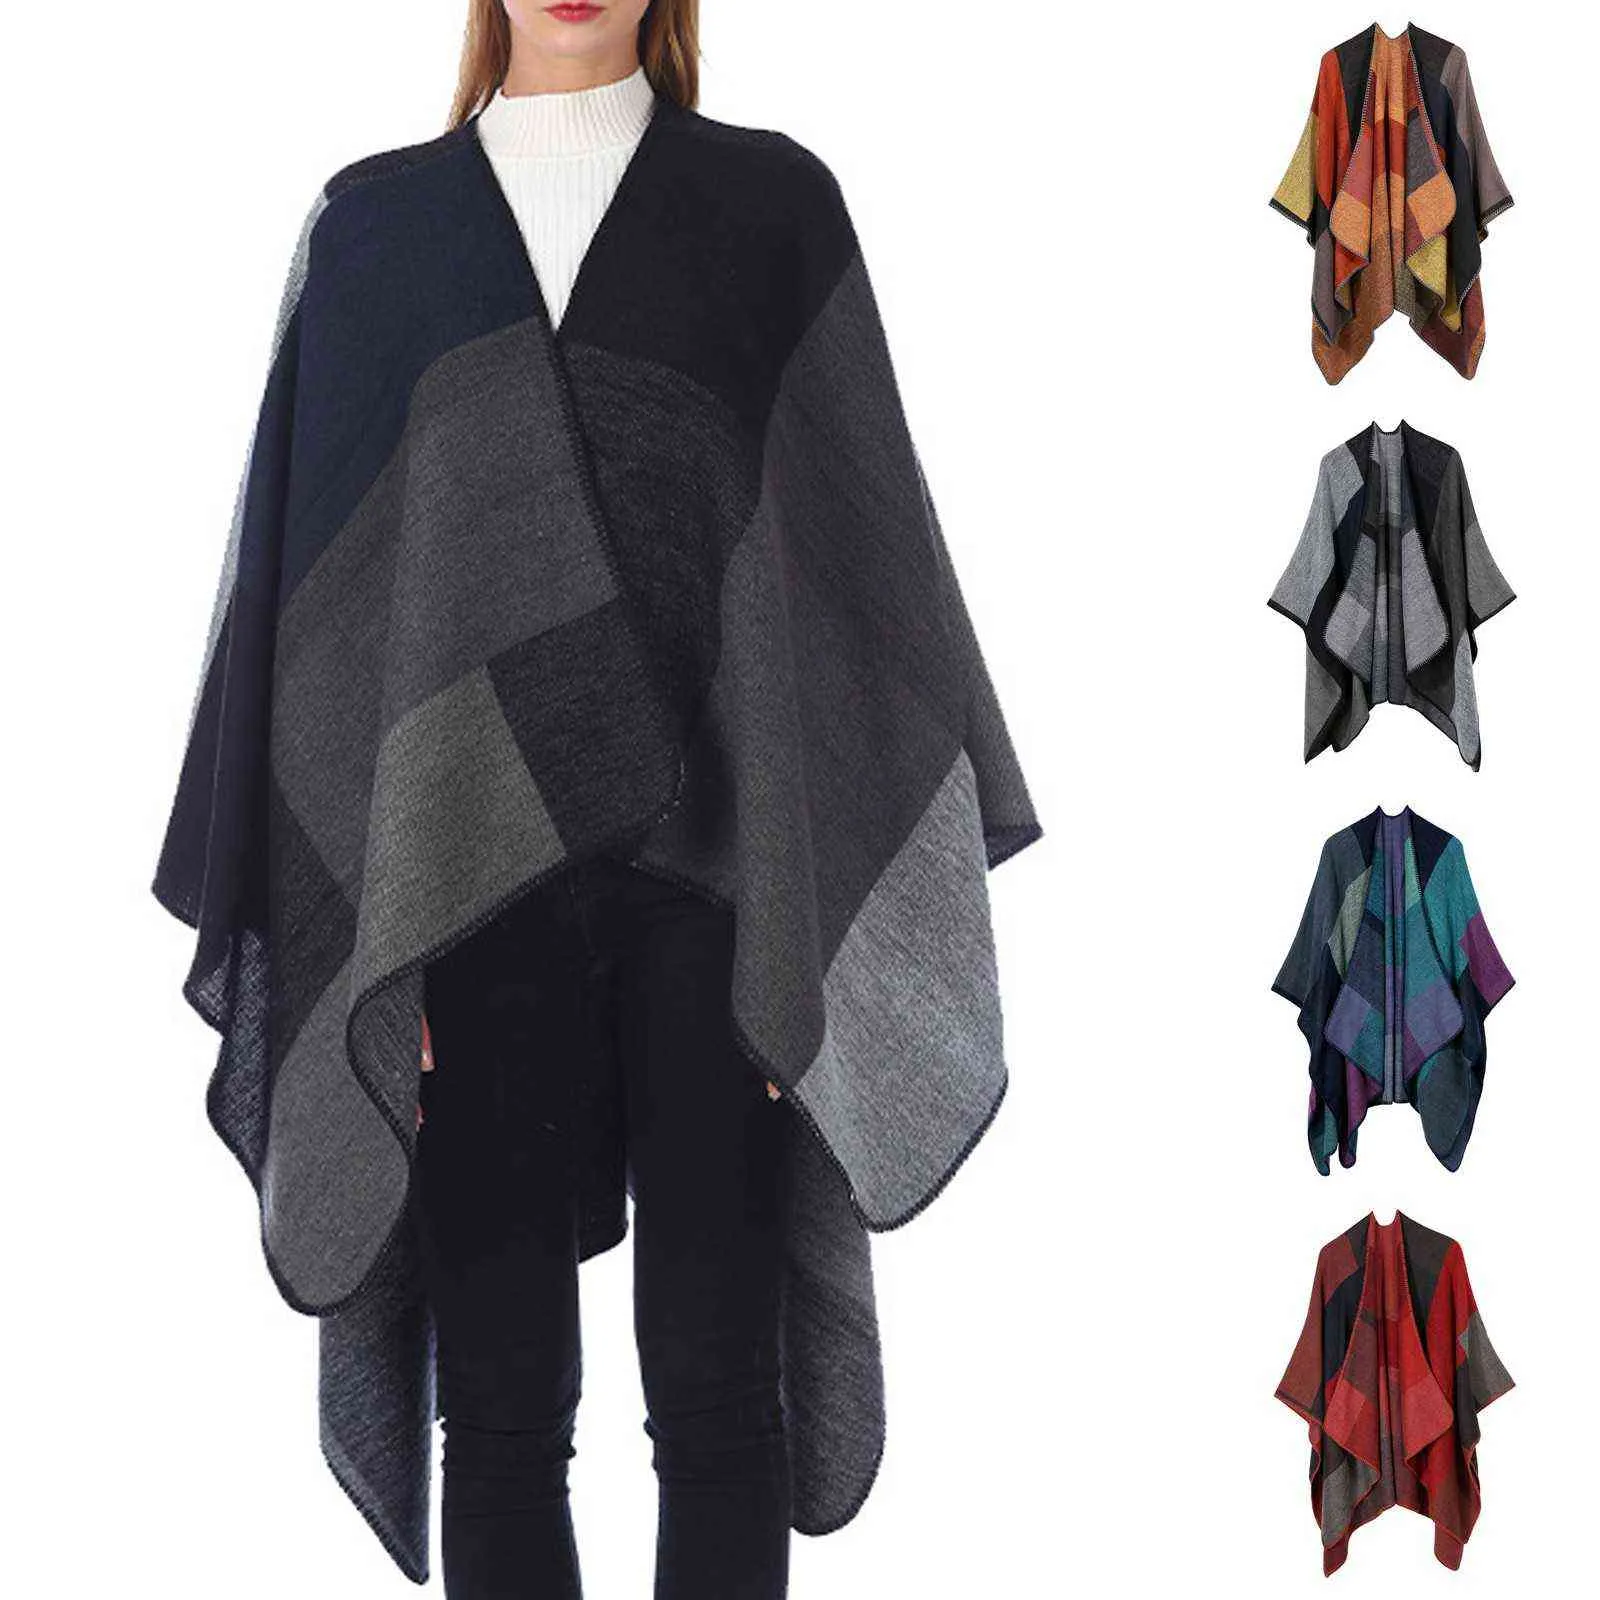 Moda Kadınlar Kış Sonbahar Örme Kaşmir Panço Pelerin Şal Wrap Hırka Kazak Ceket Zarif Eşarp Pelerin Sıcak Palto # G3 Y1122